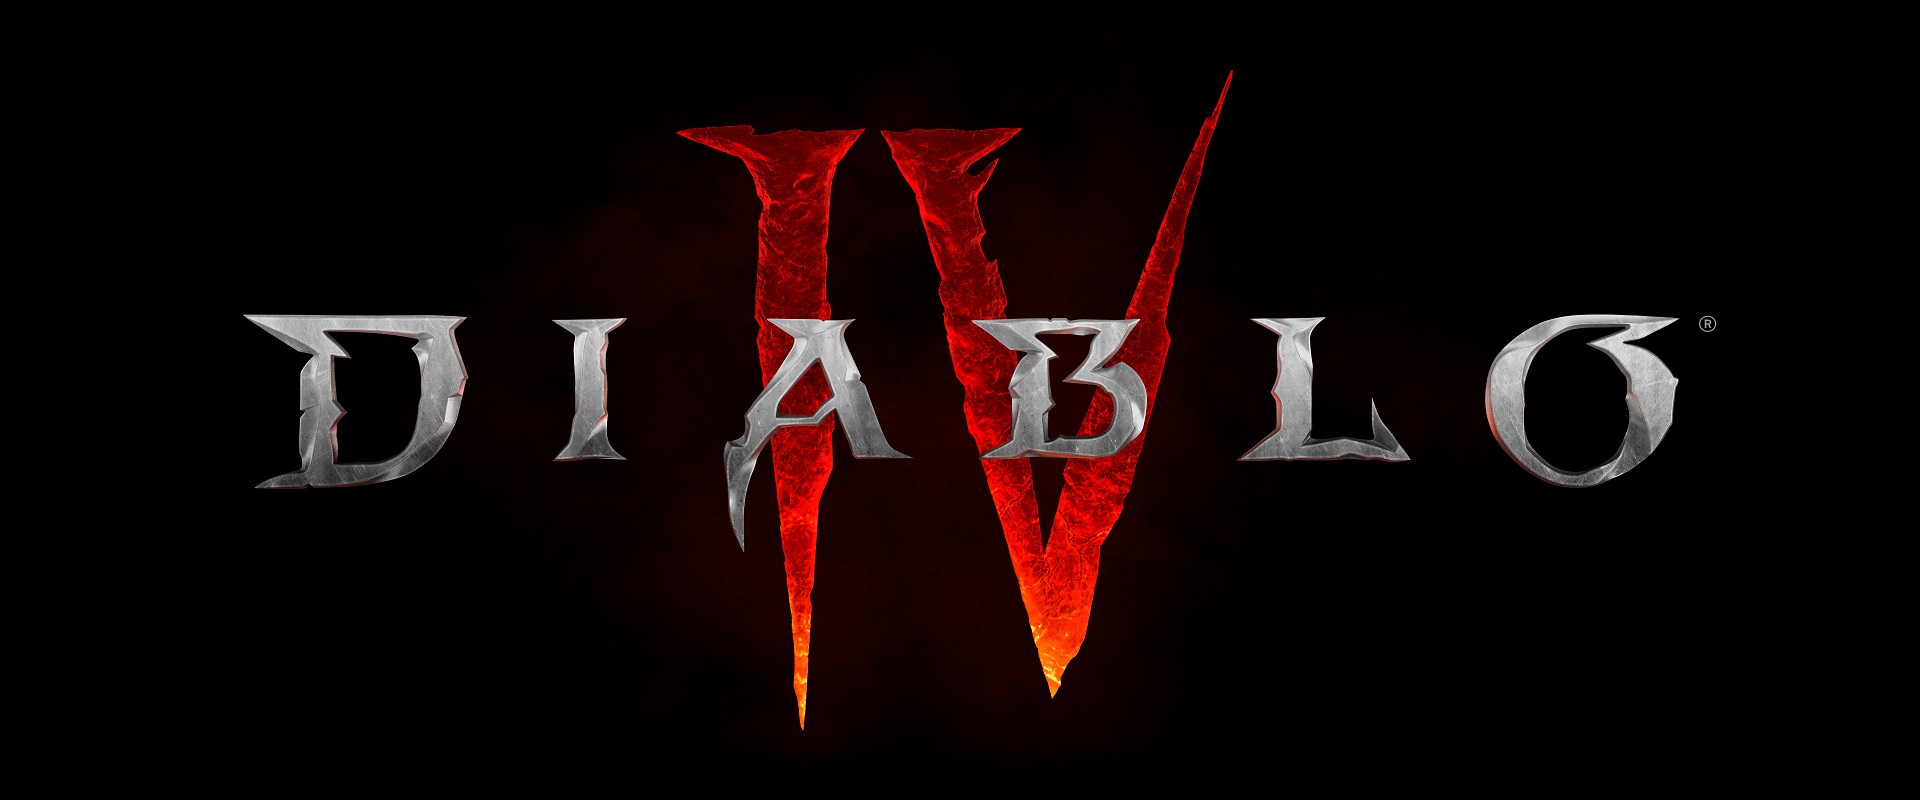 Diablo IV Platinum